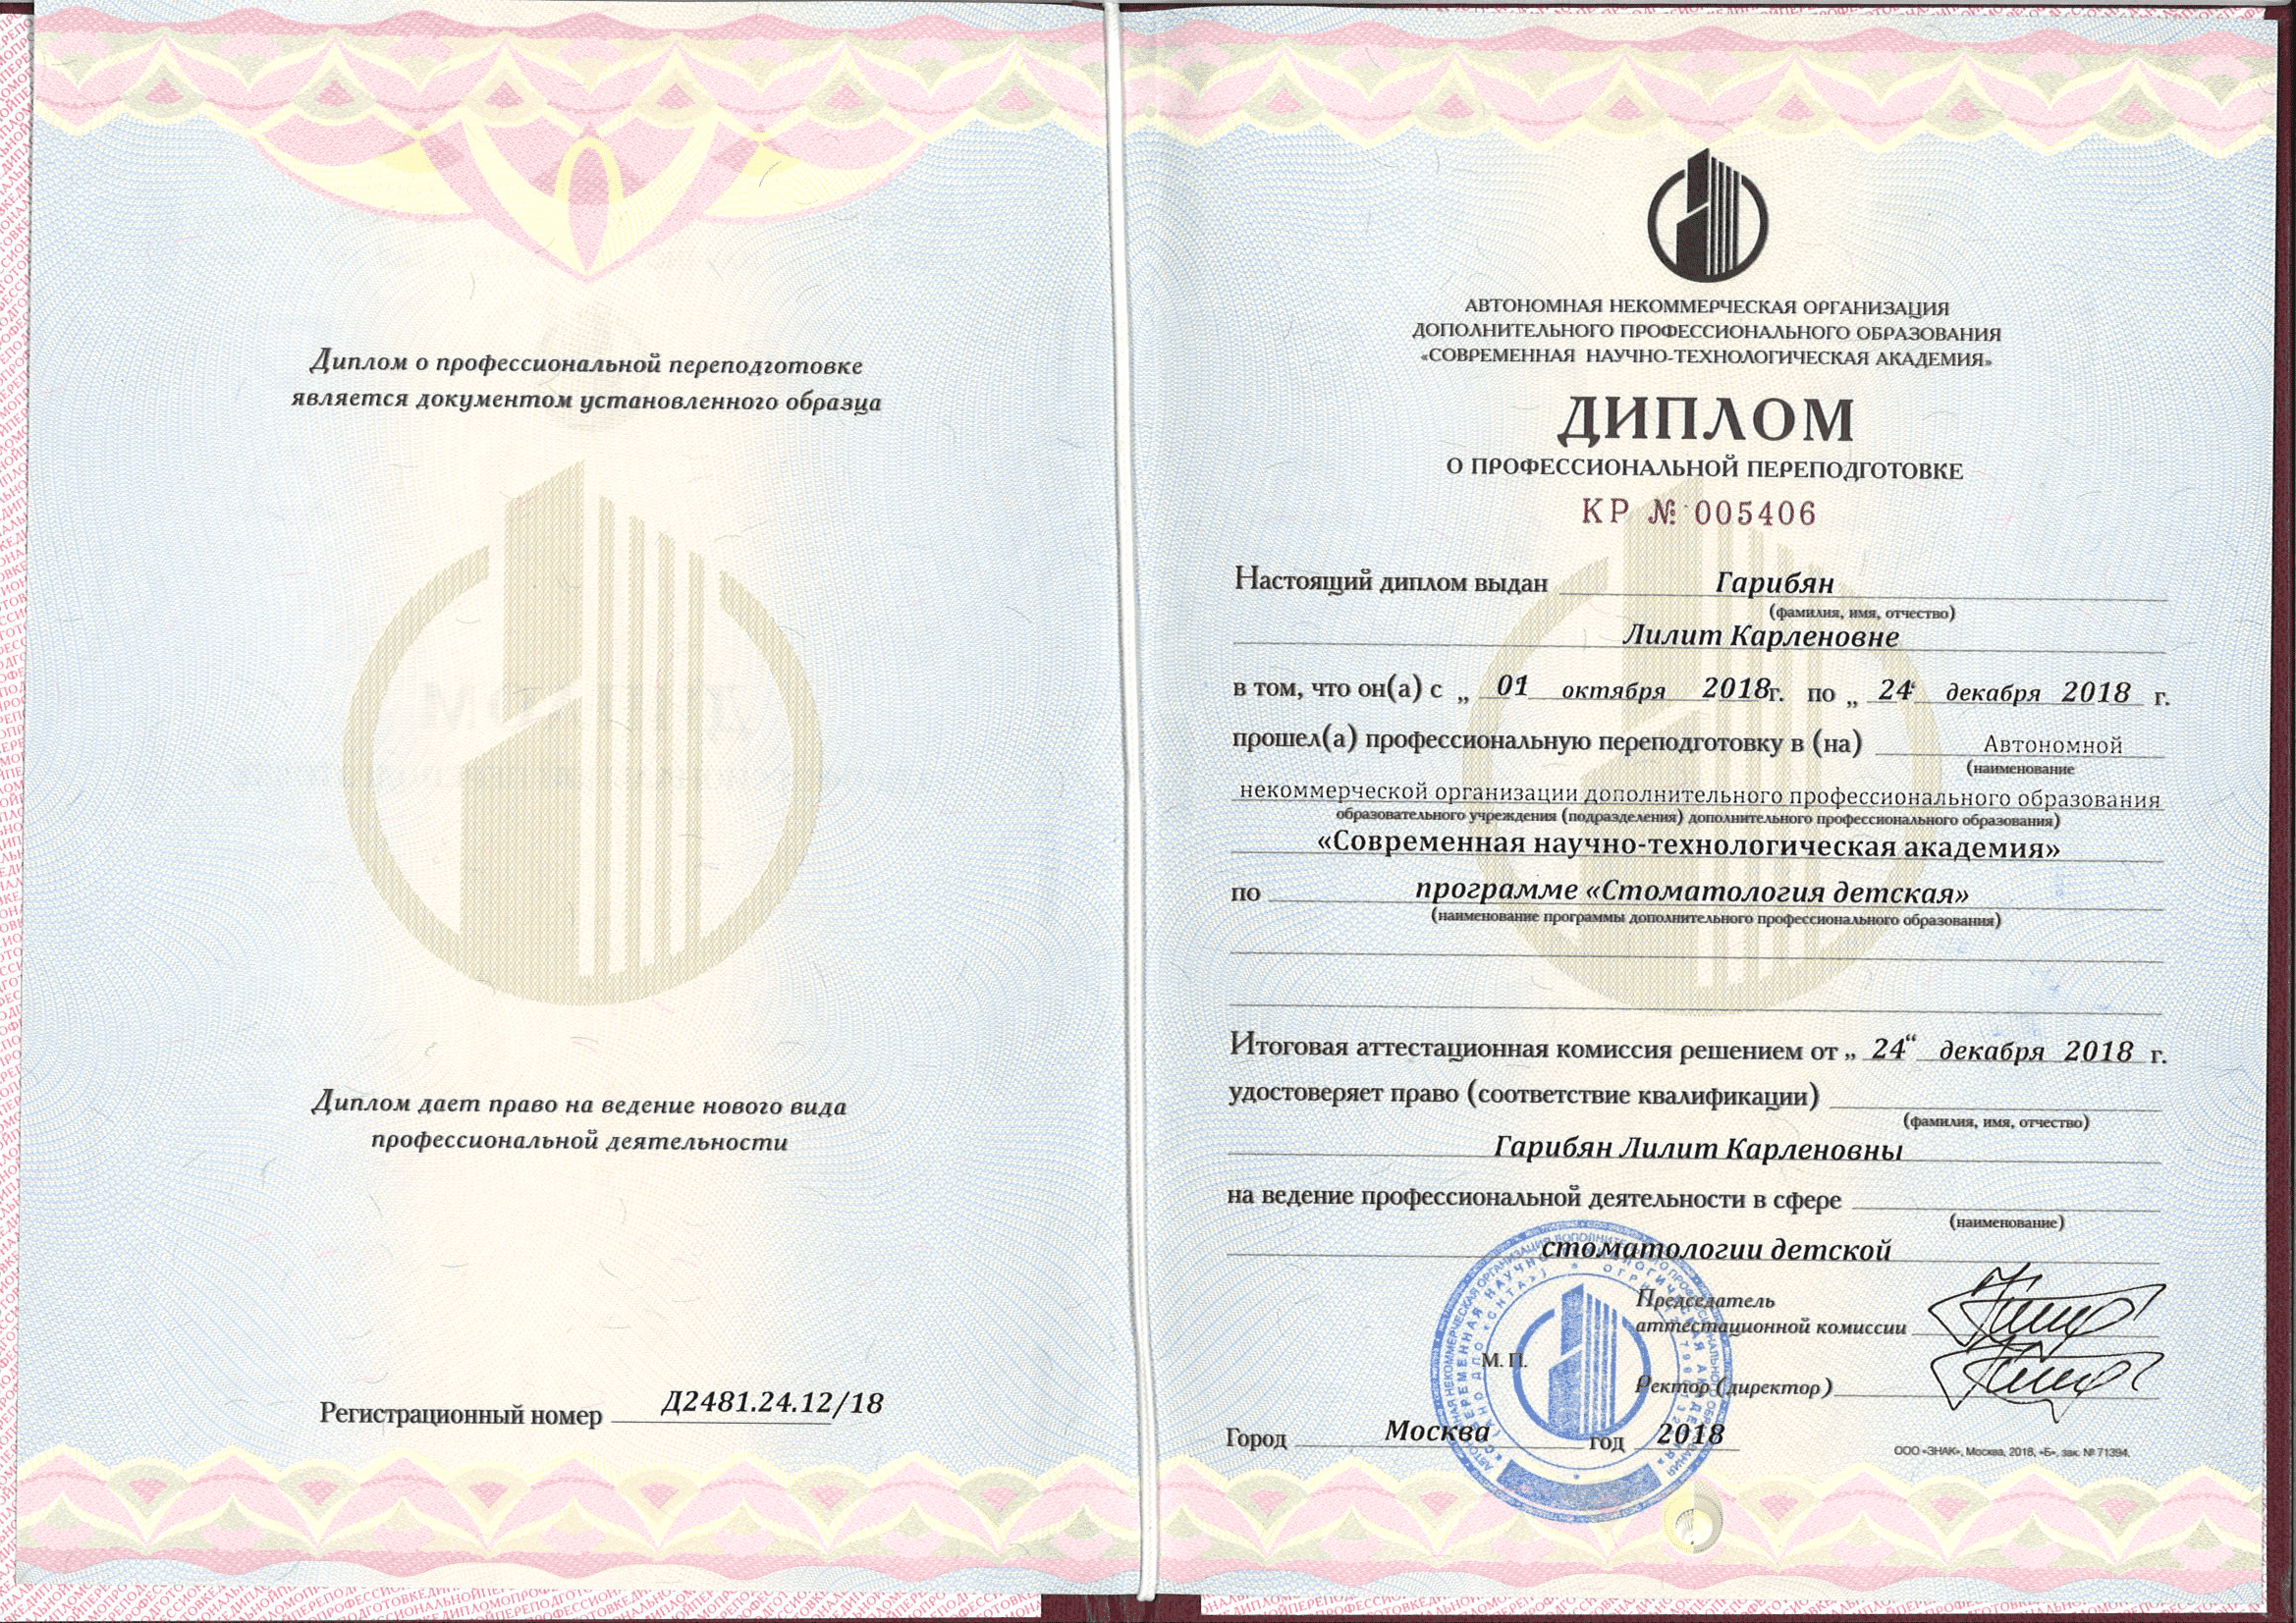 Гарибян Лилит Карленовна сертификат специалиста 3